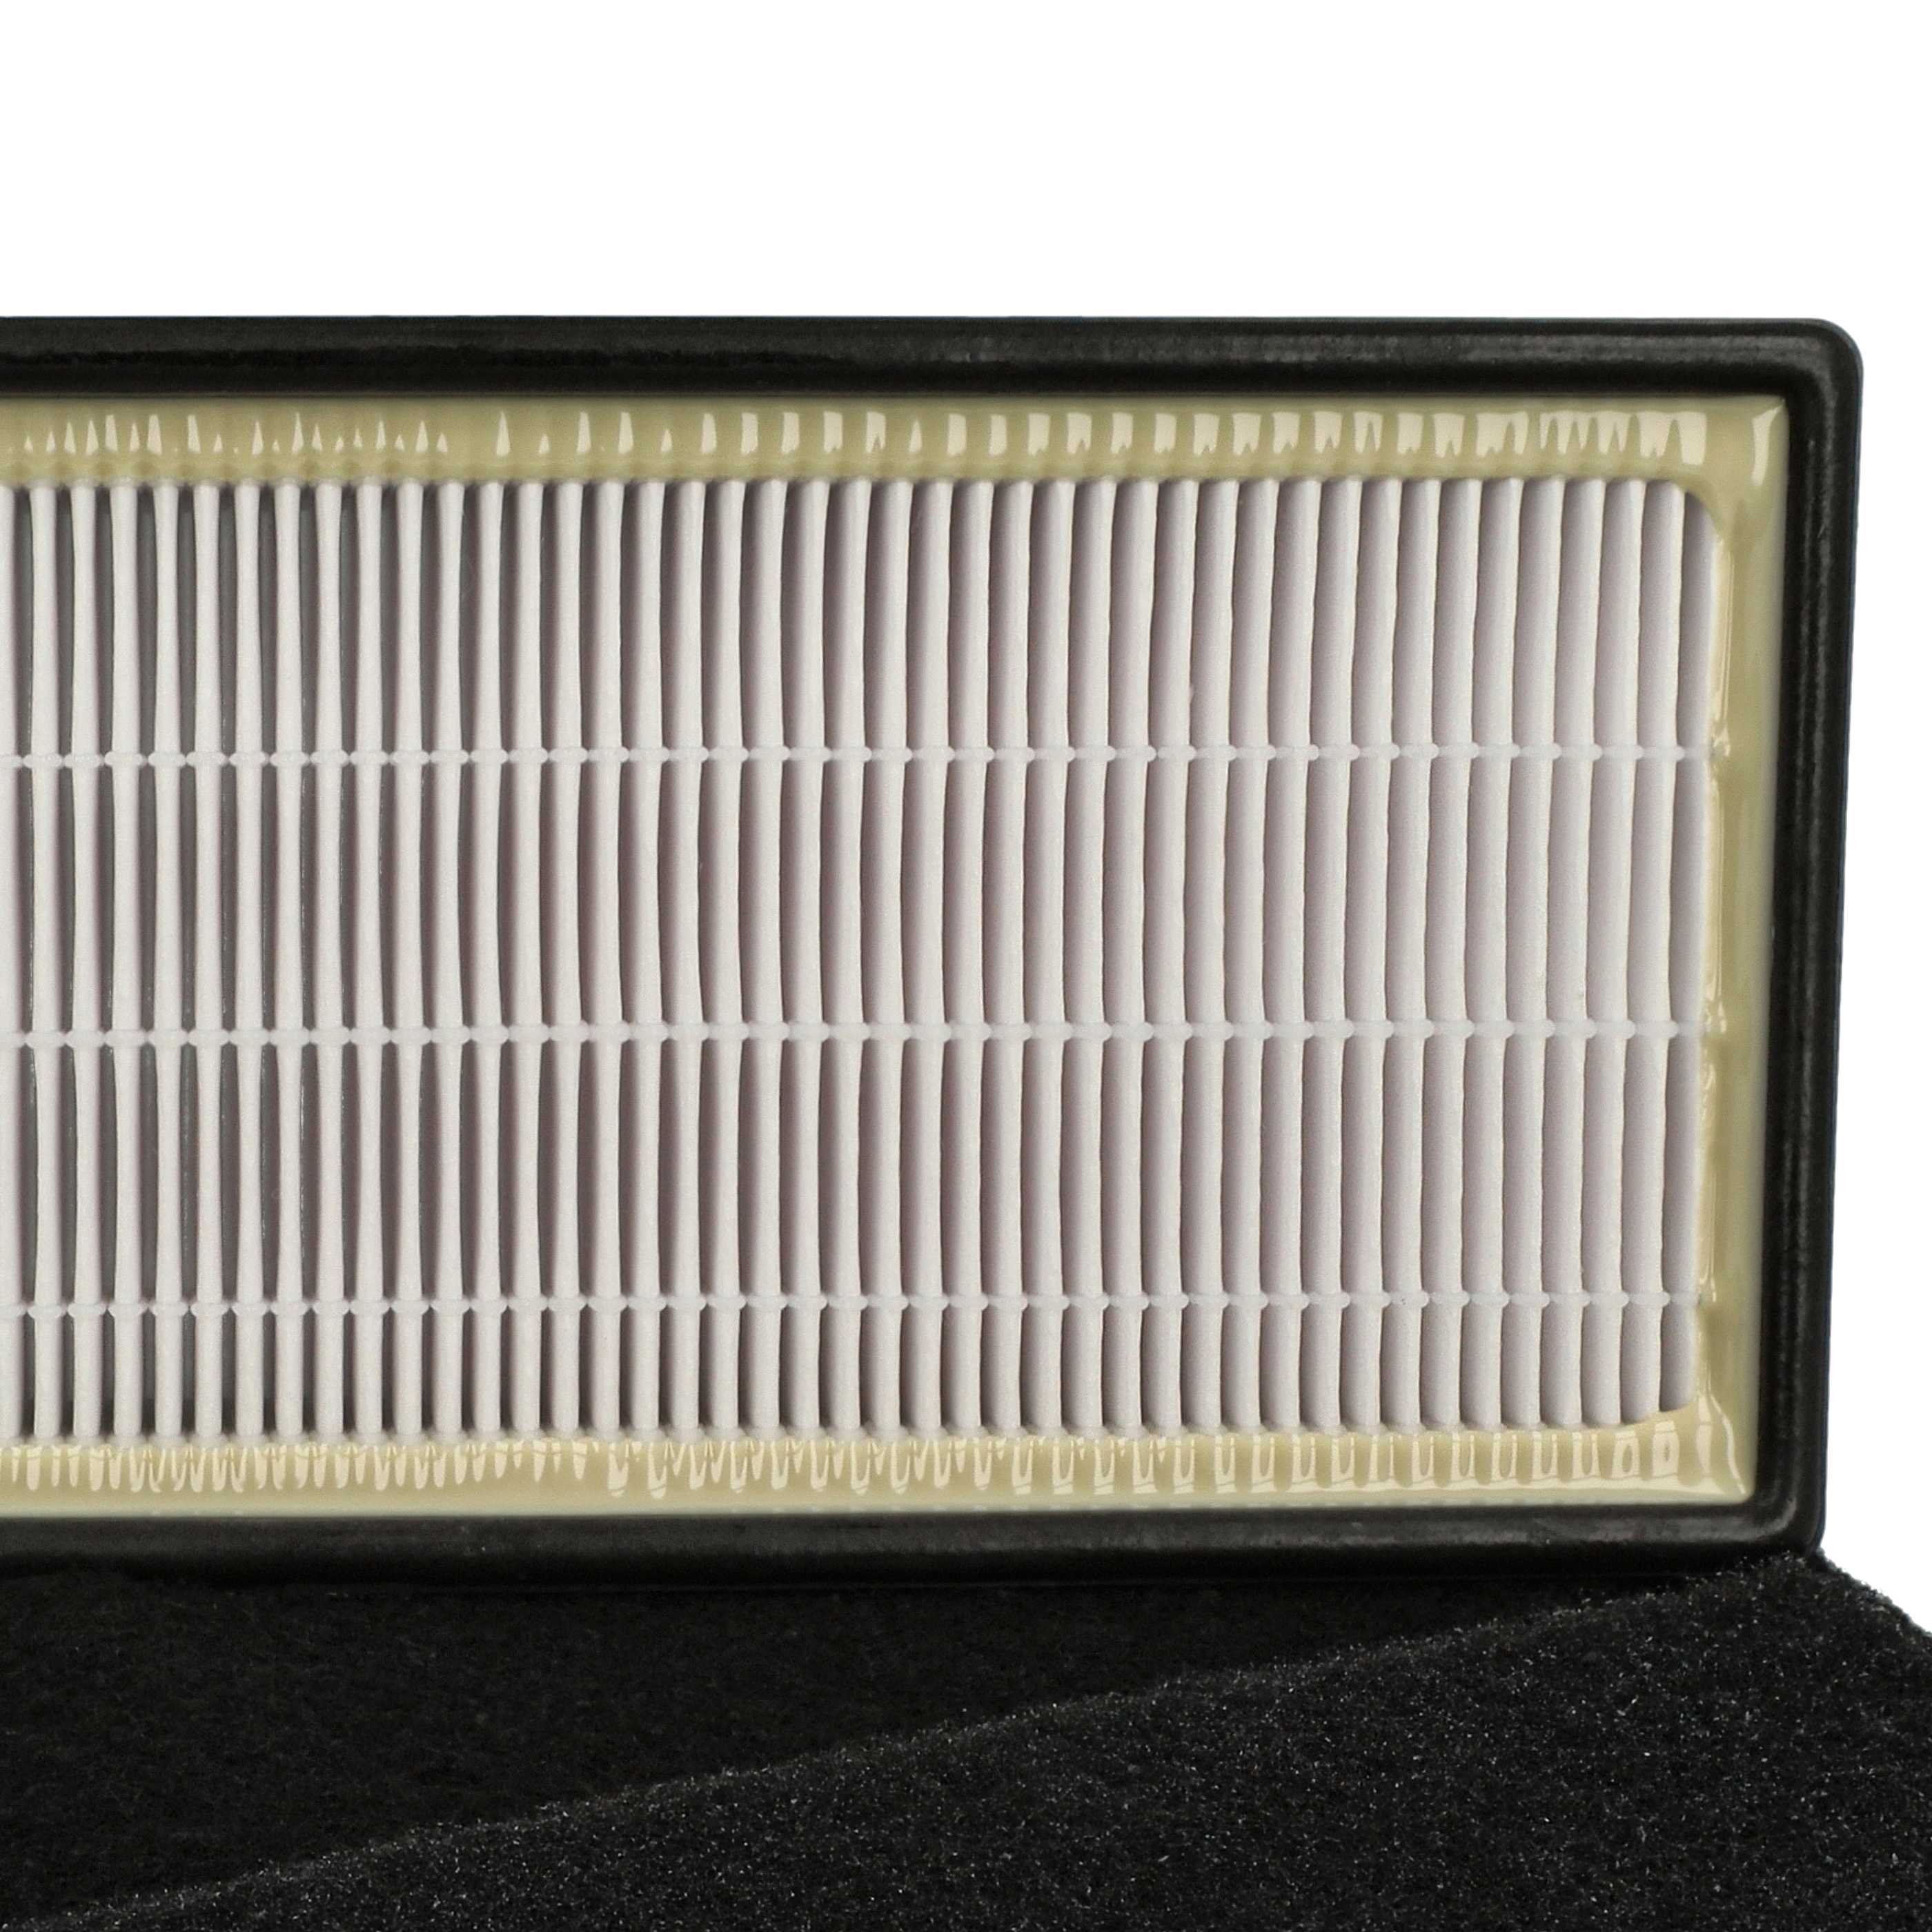 2-tlg. Filter-Set als Ersatz für Honeywell RPAP-9071/16200 für Honeywell Luftreiniger - Vorfilter, Kombifilter